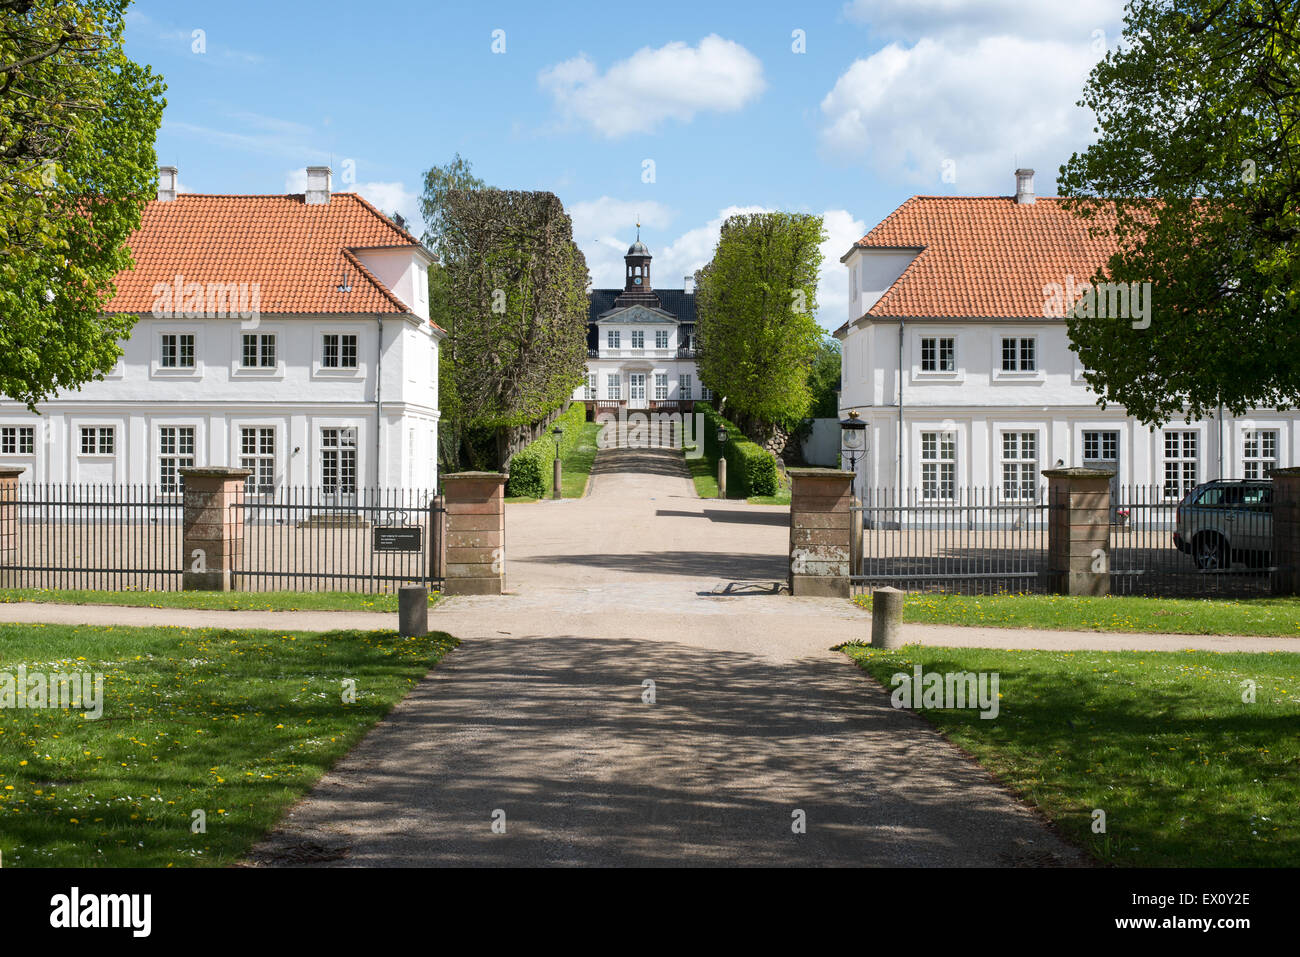 Sorgenfri slot, castle sorgenfri palace in Lyngby, Denmark Stock Photo